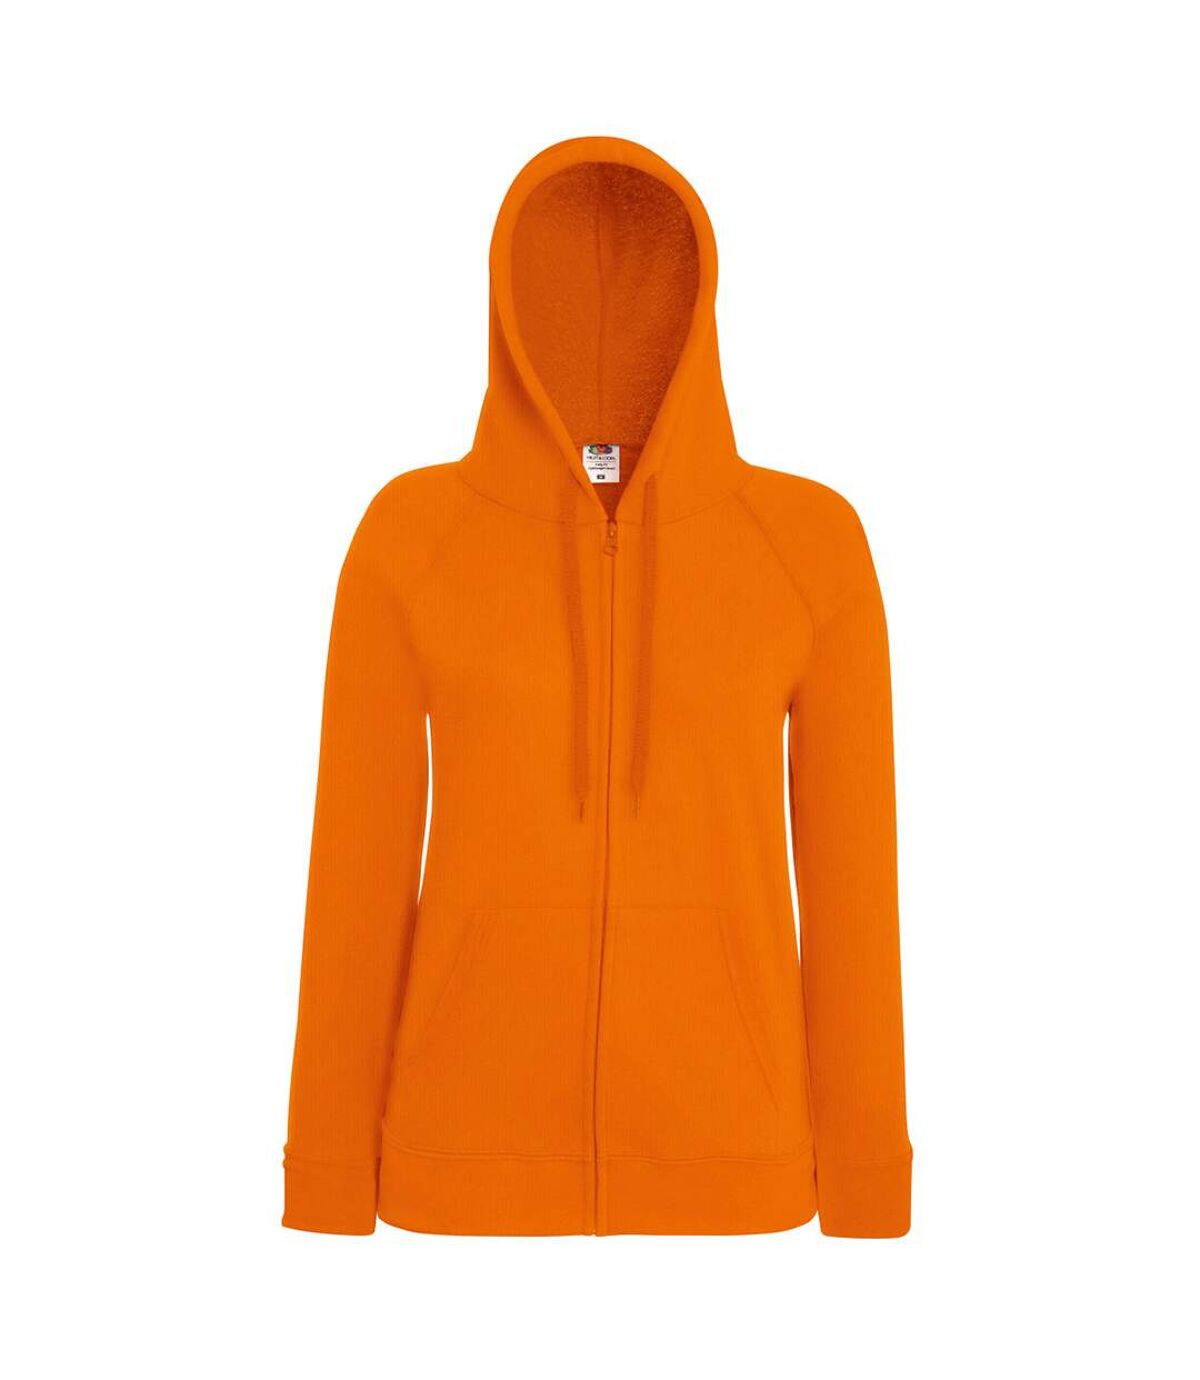 Fruit Of The Loom Ladies Fitted Hooded Sweatshirt (Orange)